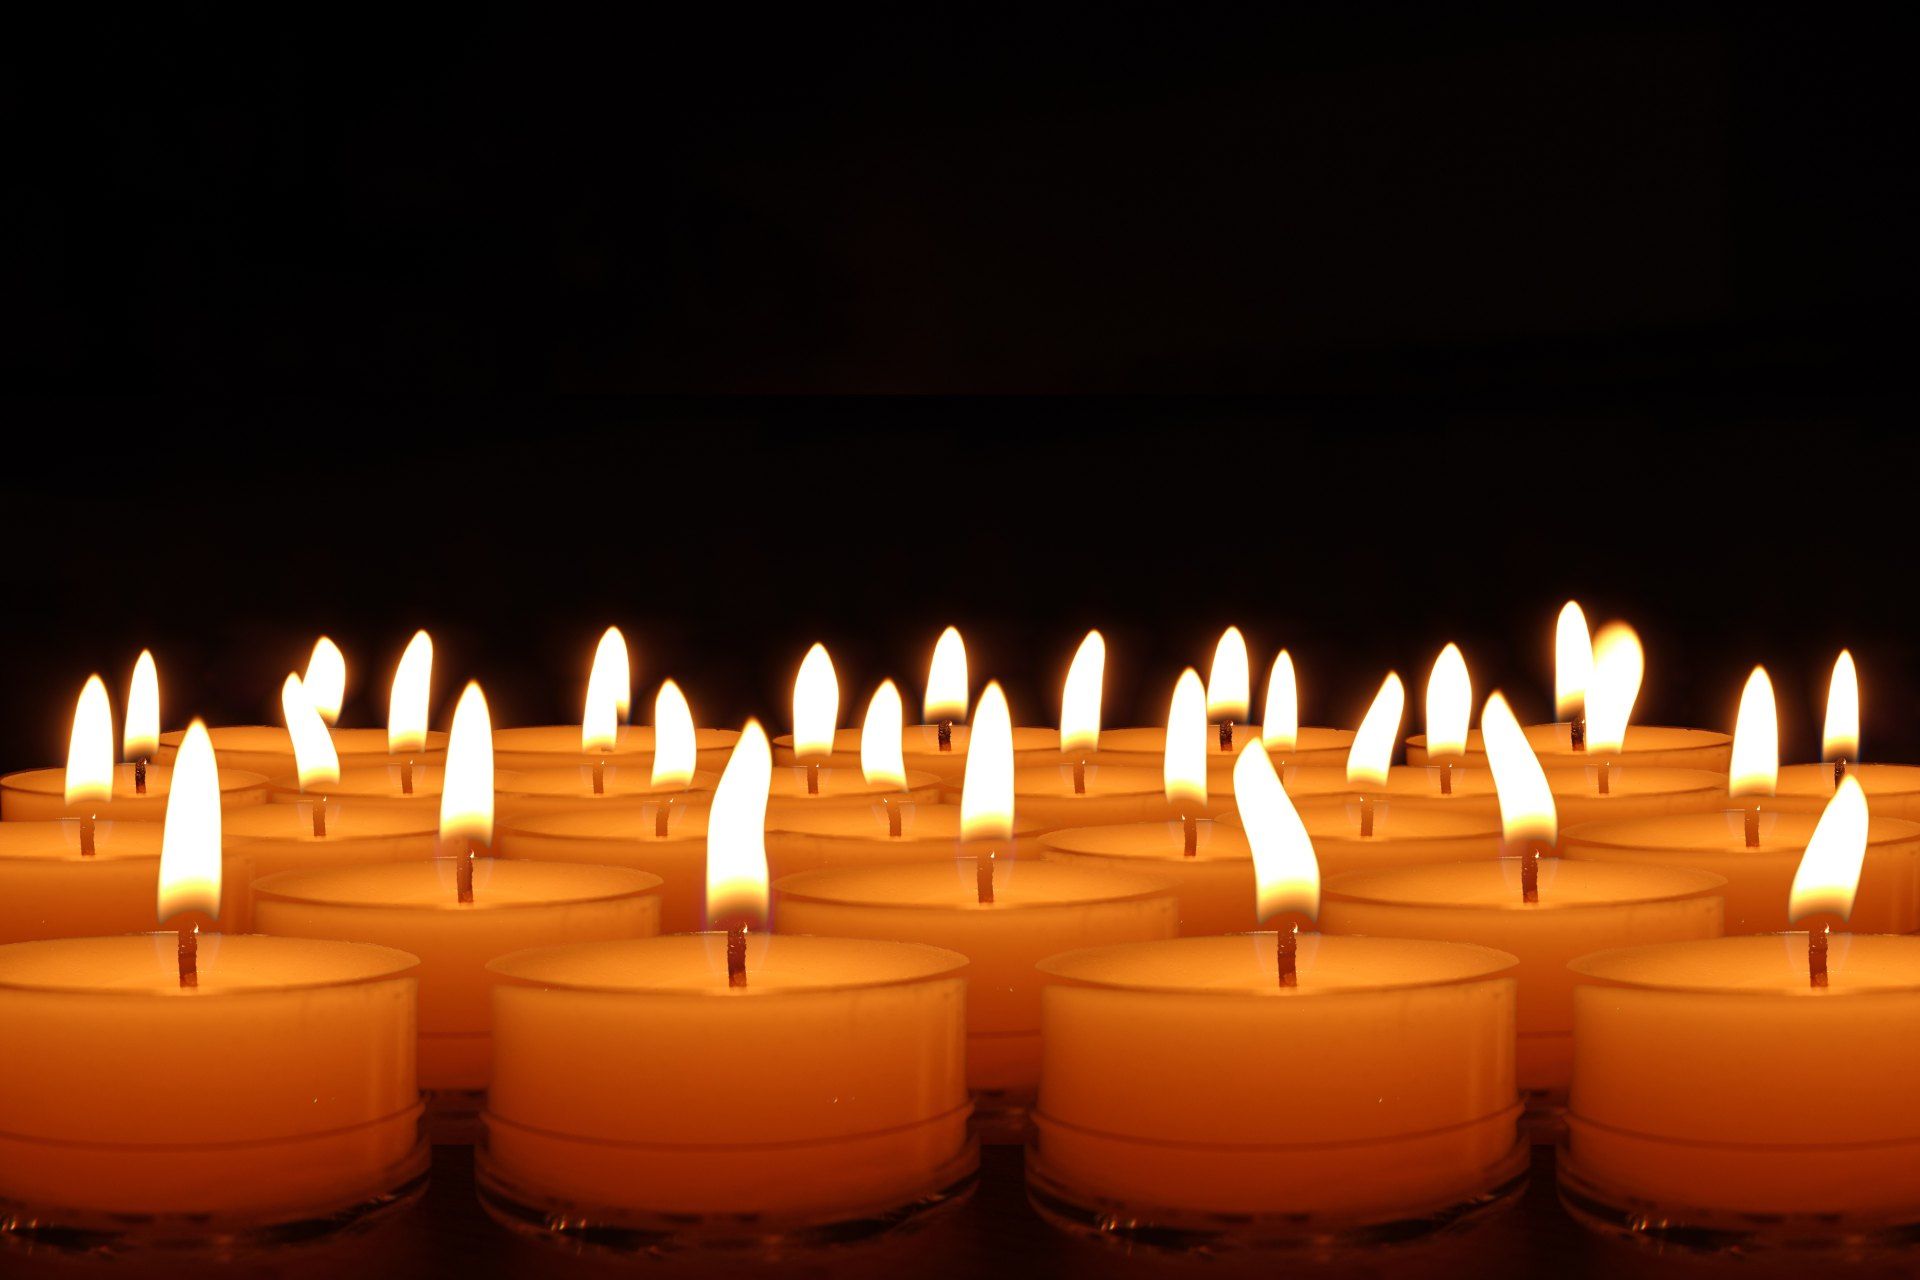 تصویر تعدادی شمع زرد روشن برای تسلیت و همدردی 